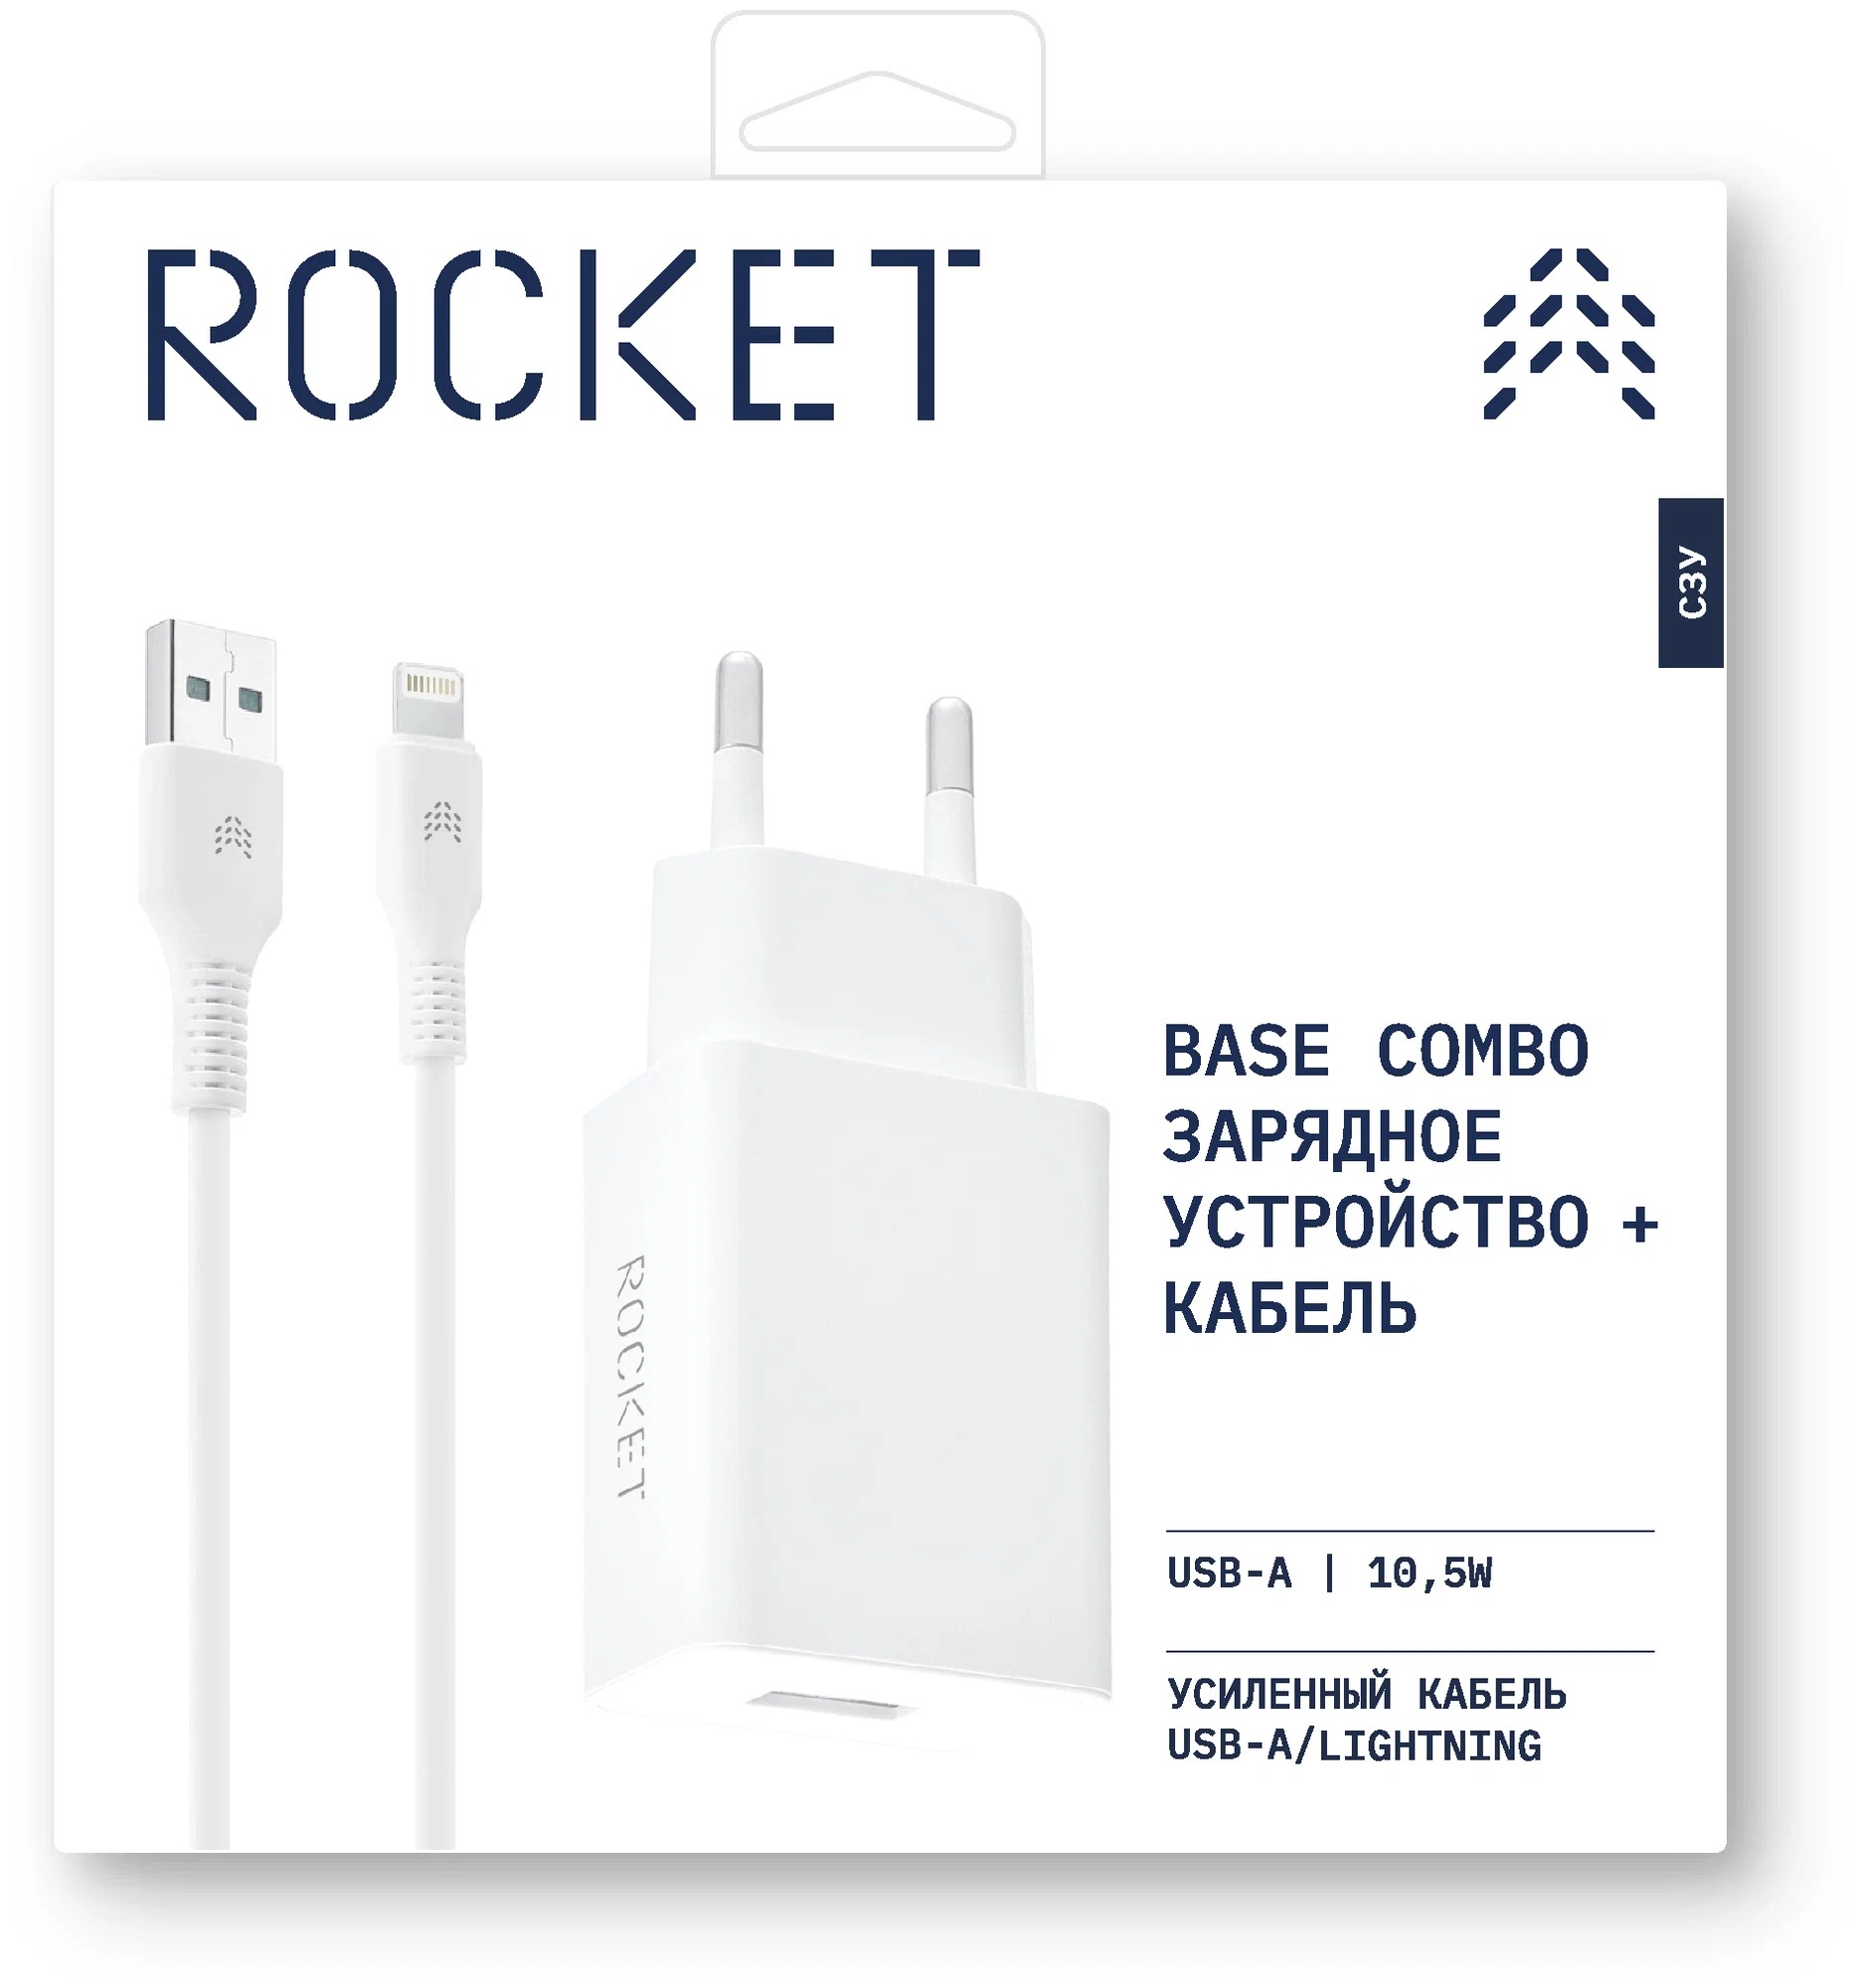 ROCKET Base Combo Сетевое зарядное устройство Base 10,5W, USB-A + кабель USB-A/Lightning, белый